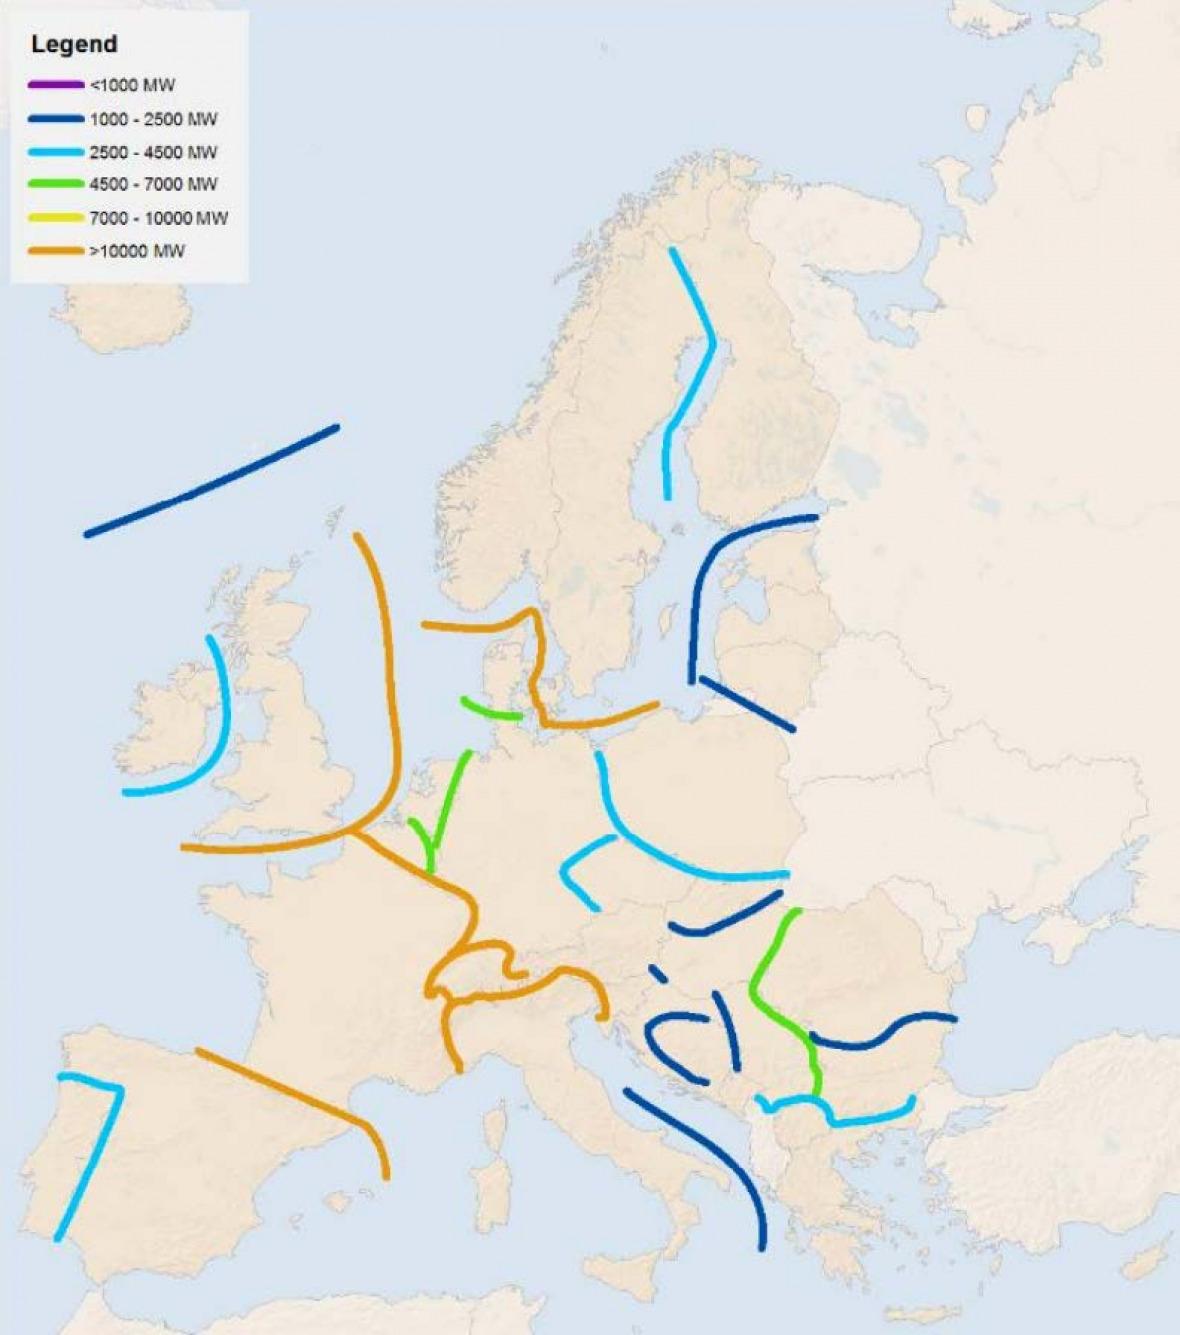 Übertragungskapazitäten in Europa 2030 nach Plänen von ENTSO-E. © ENTSO-E.